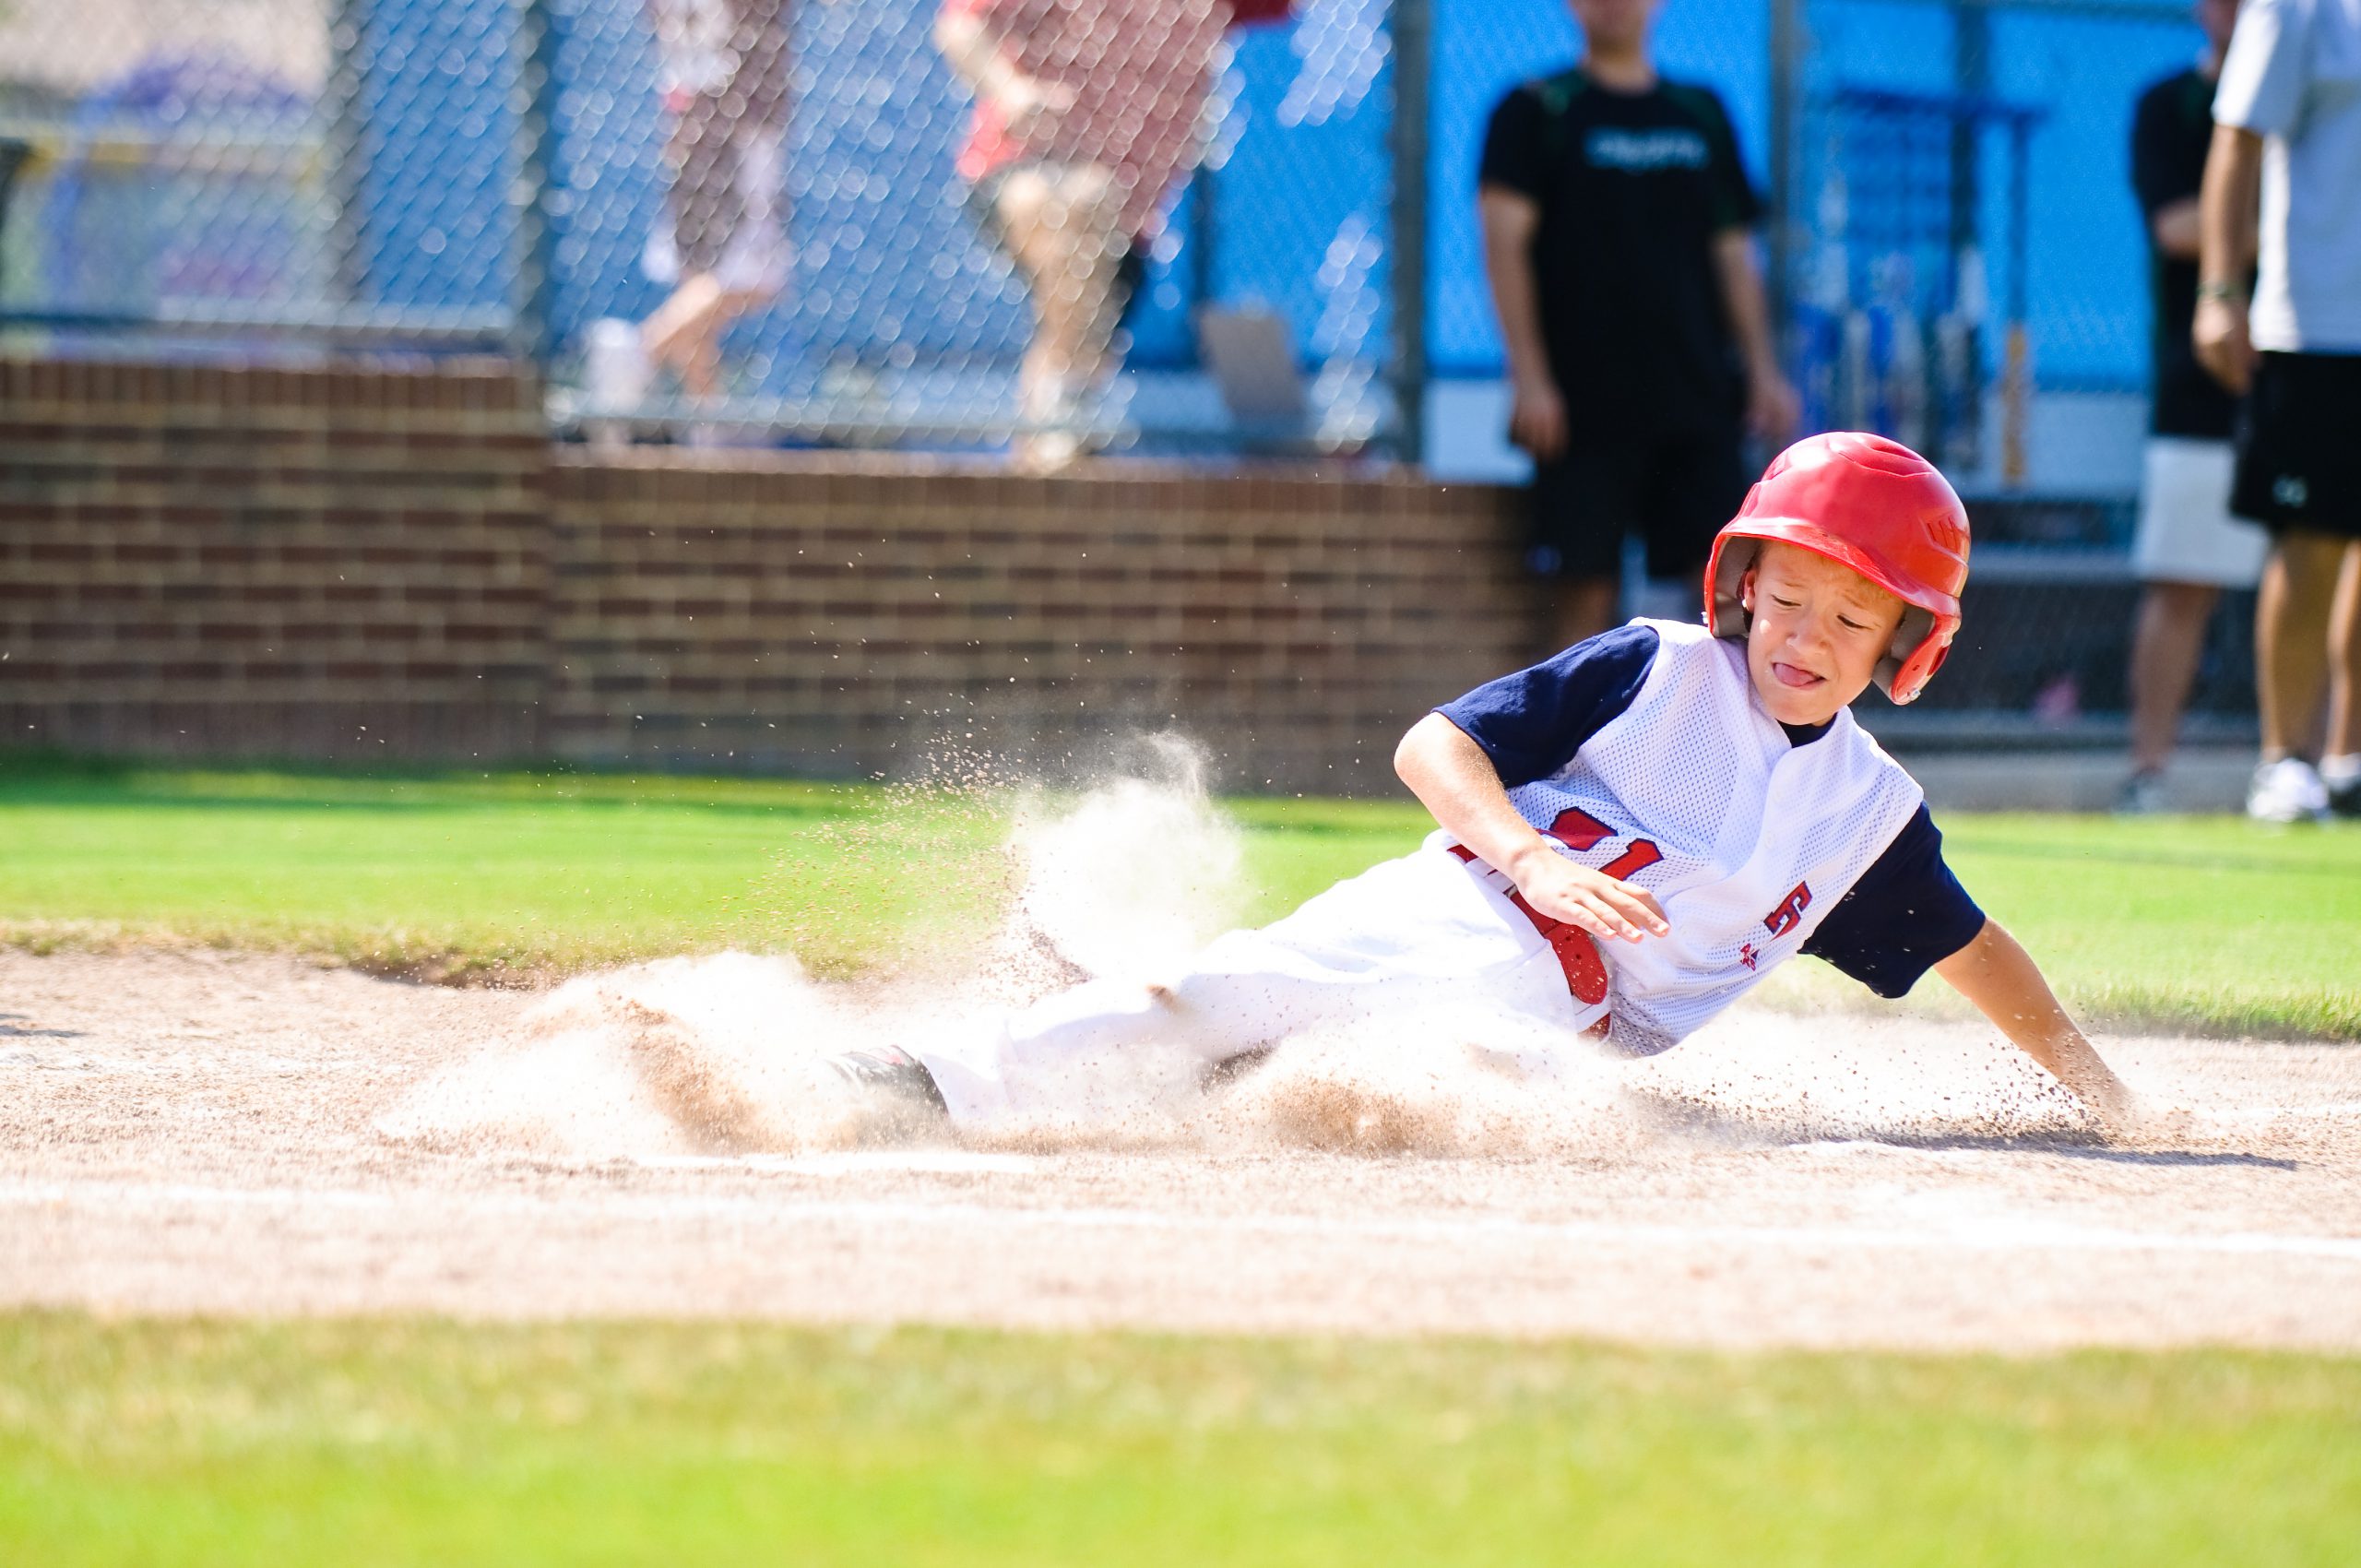 kid sliding into base (baseball)